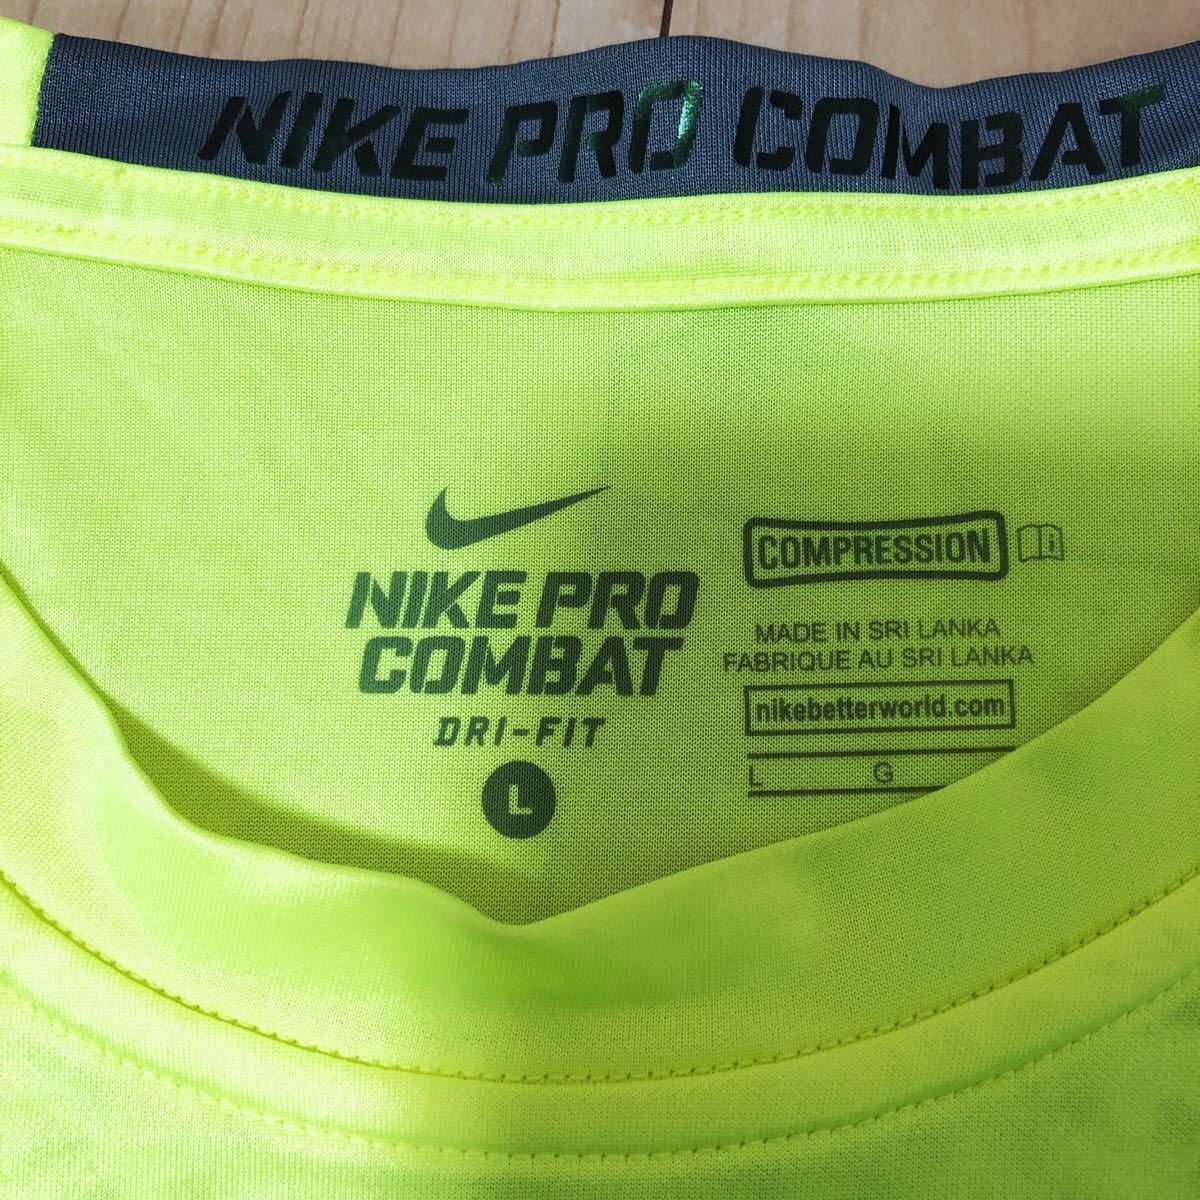 NIKE PRO ナイキプロ ハイパークールコンプレッション シャツ 半袖